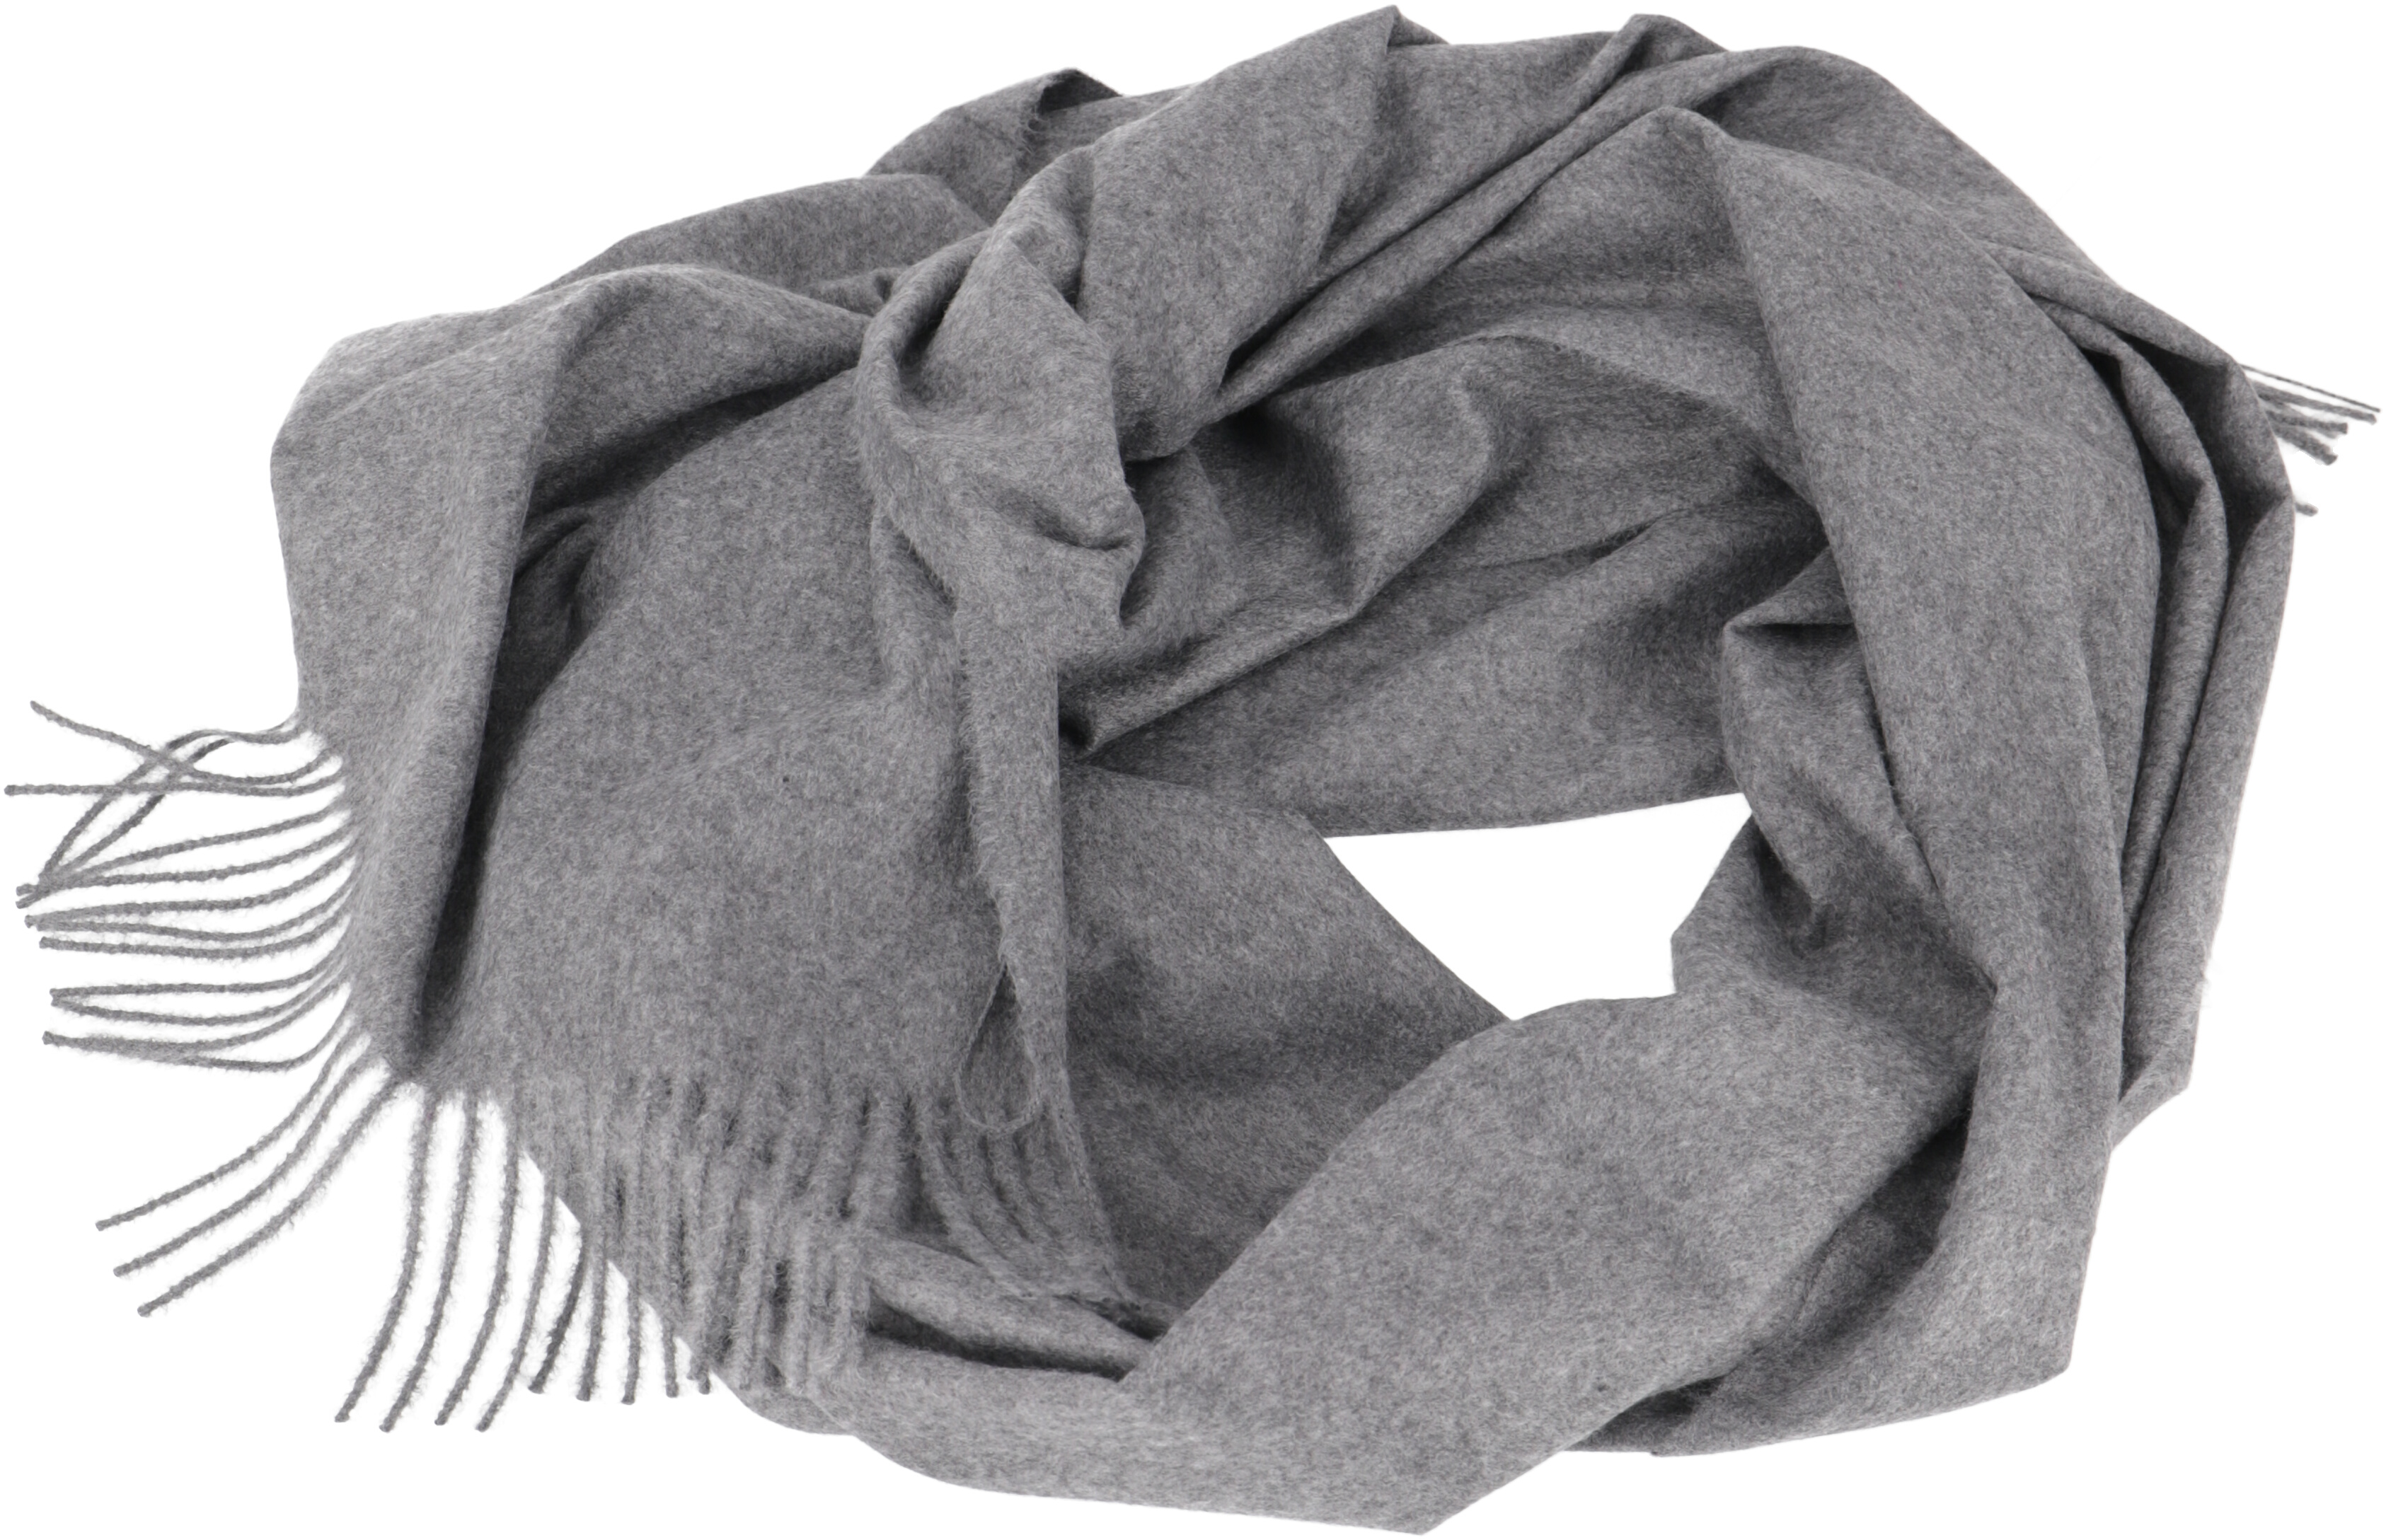 Kaufe jetzt den Superweichen Schal von Guru-Shop: Breiter Wollschal in Grau!